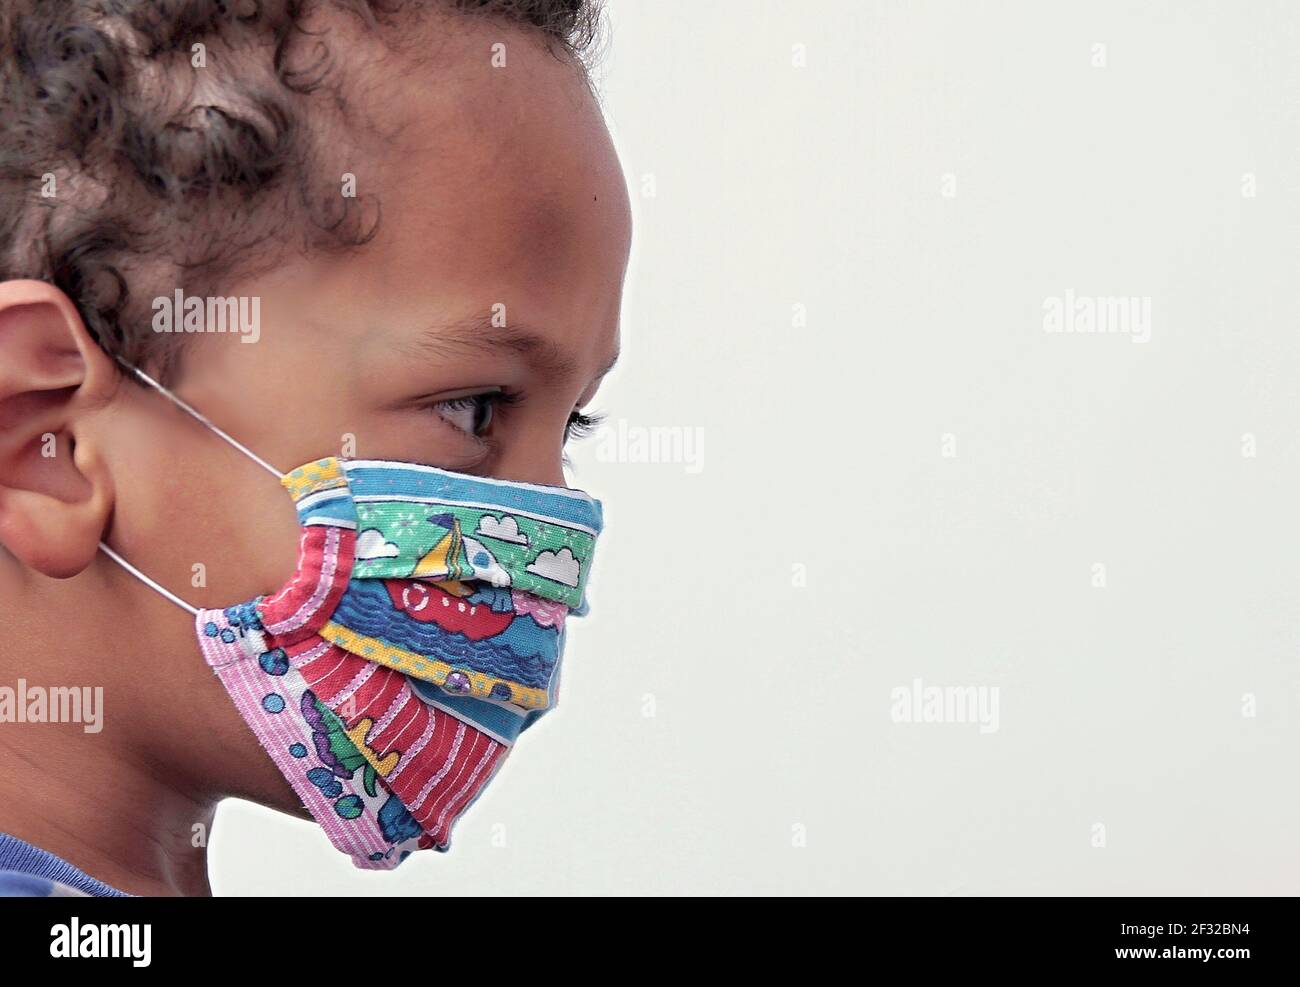 Junge mit Gesichtsmasken schützt sich vor Coronavirus auf weißem Hintergrund Stock Foto Stockfoto